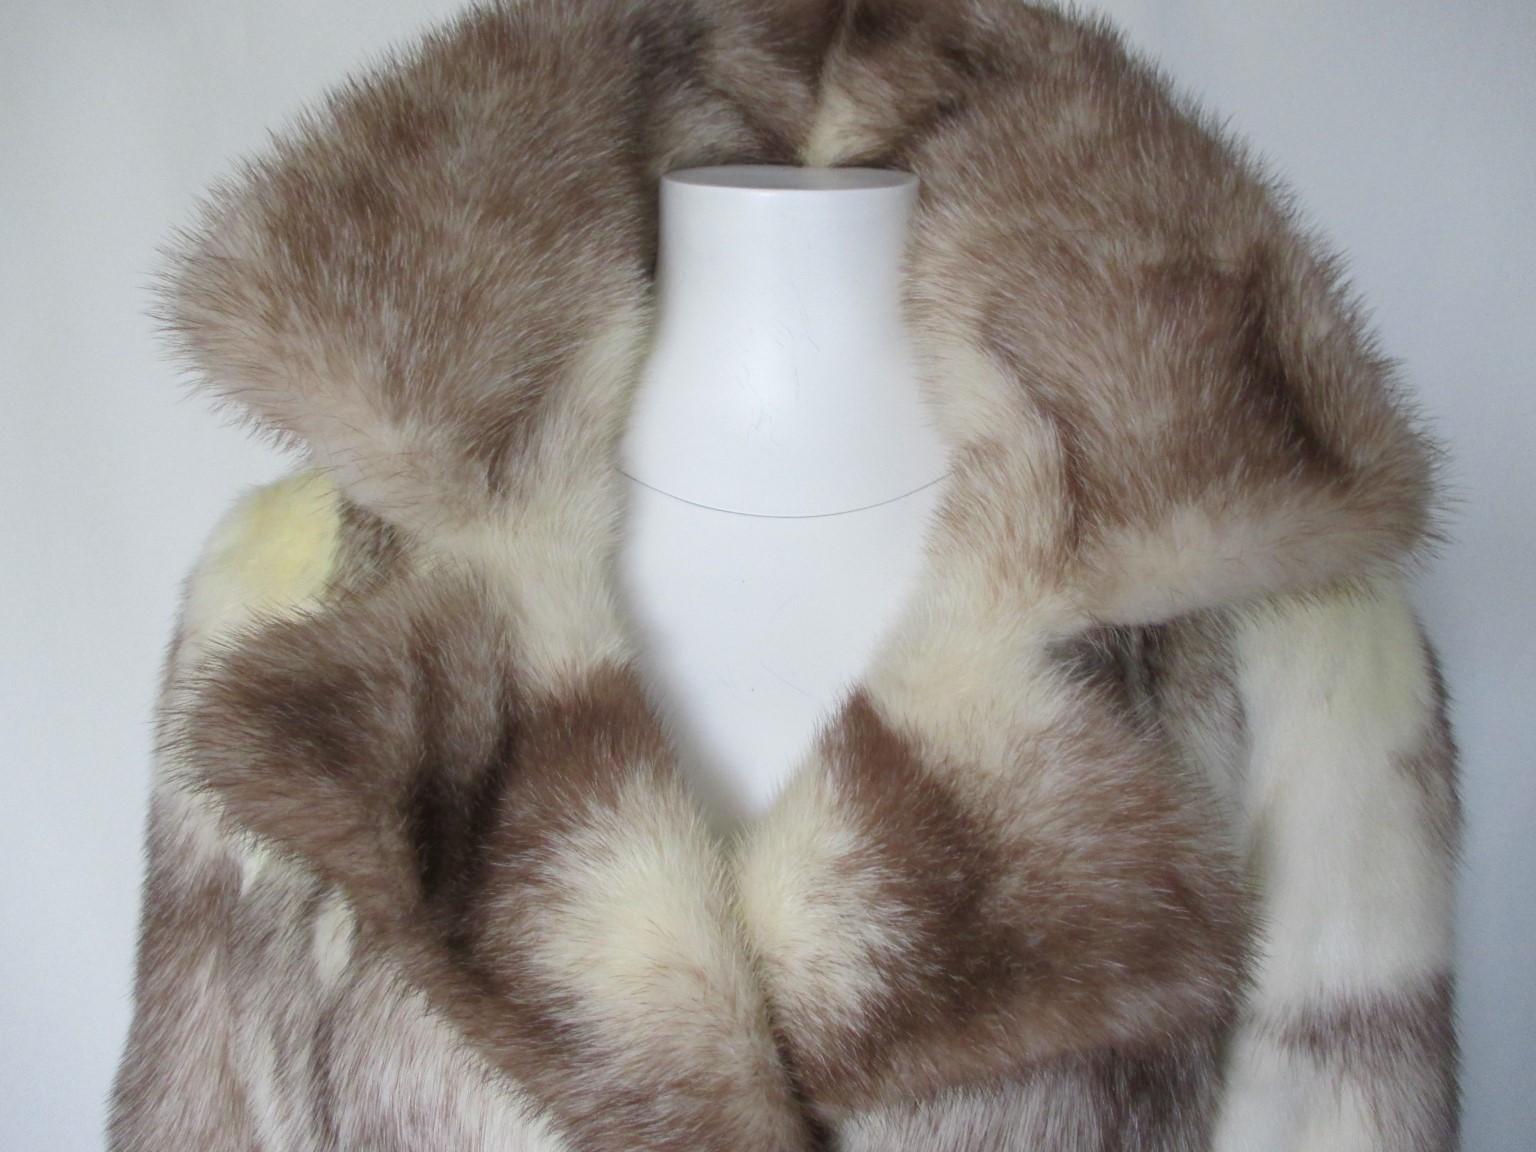 Cette superbe veste/manteau vintage en fourrure de vison est très rare à trouver dans cette couleur.

Nous proposons d'autres articles de luxe en fourrure, consultez notre boutique.

Détails :
Réalisé en fourrure de vison croisé/kohinoor crème/brun